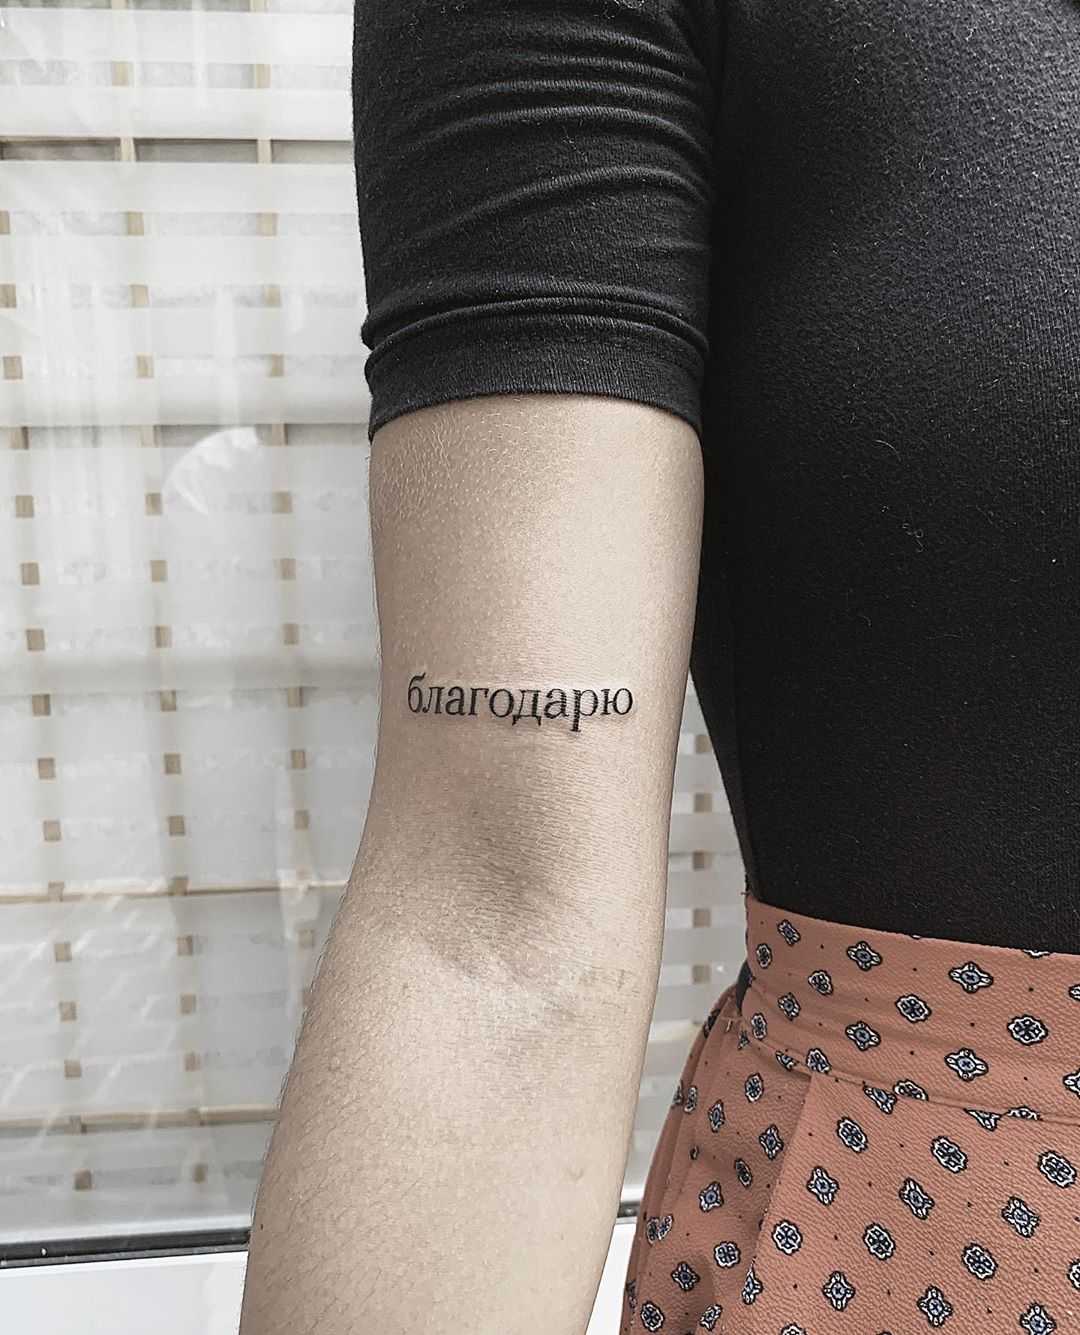 благодарю tattoo by Sasha But.maybe